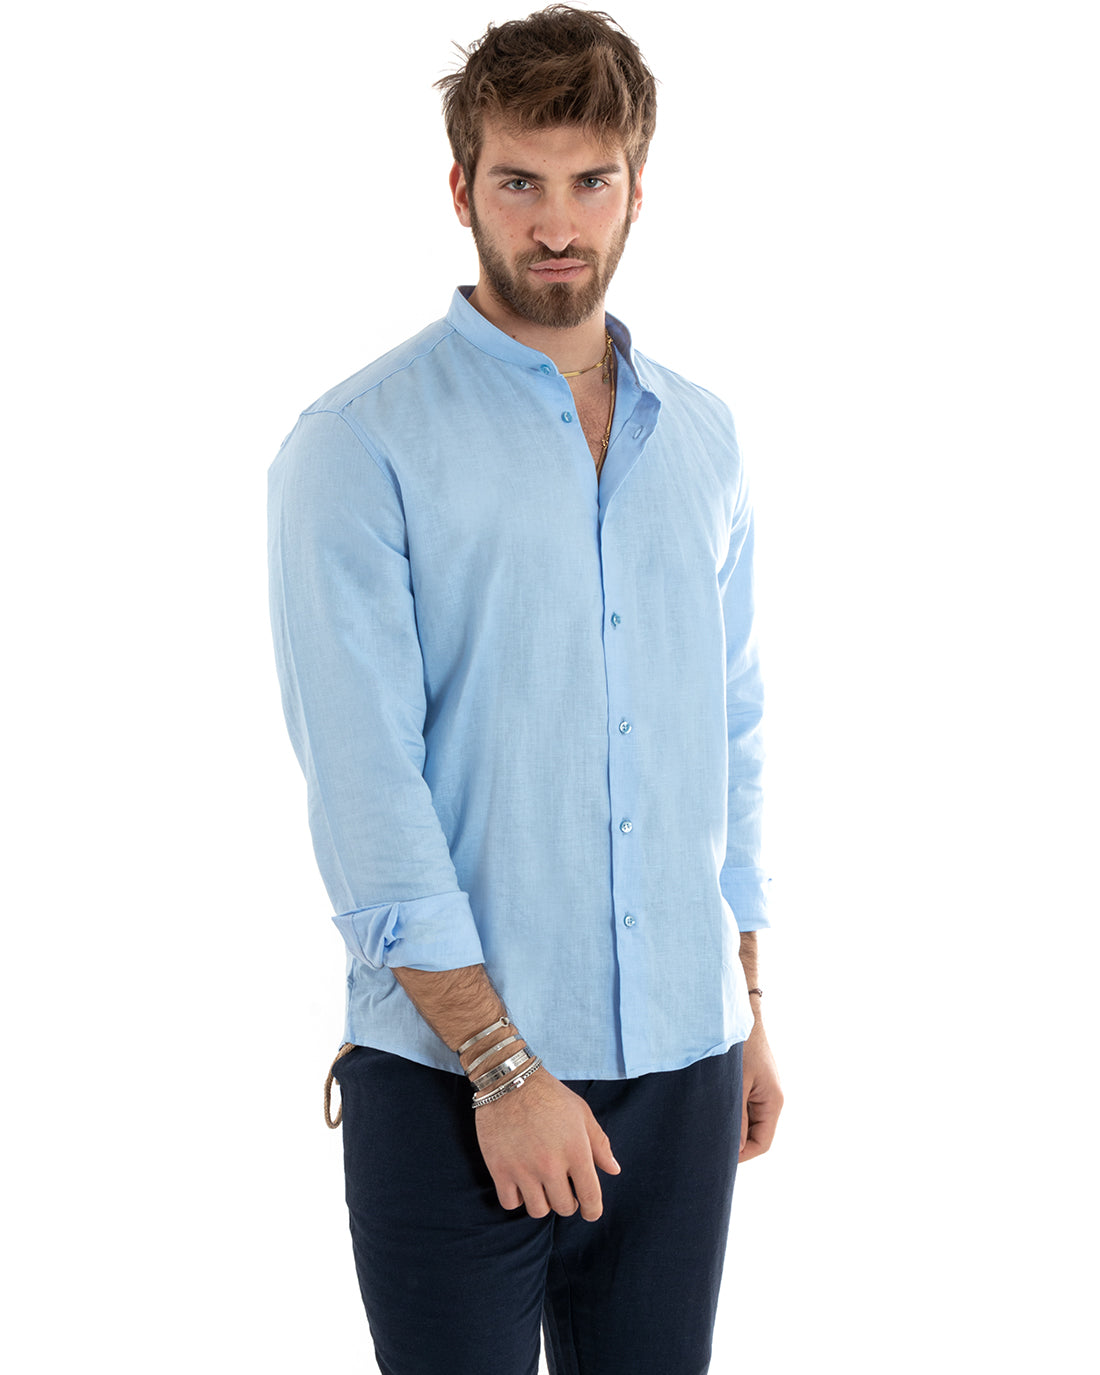 Men's Mandarin Collar Shirt Long Sleeve Linen Solid Color Tailored Light Blue GIOSAL-C2670A